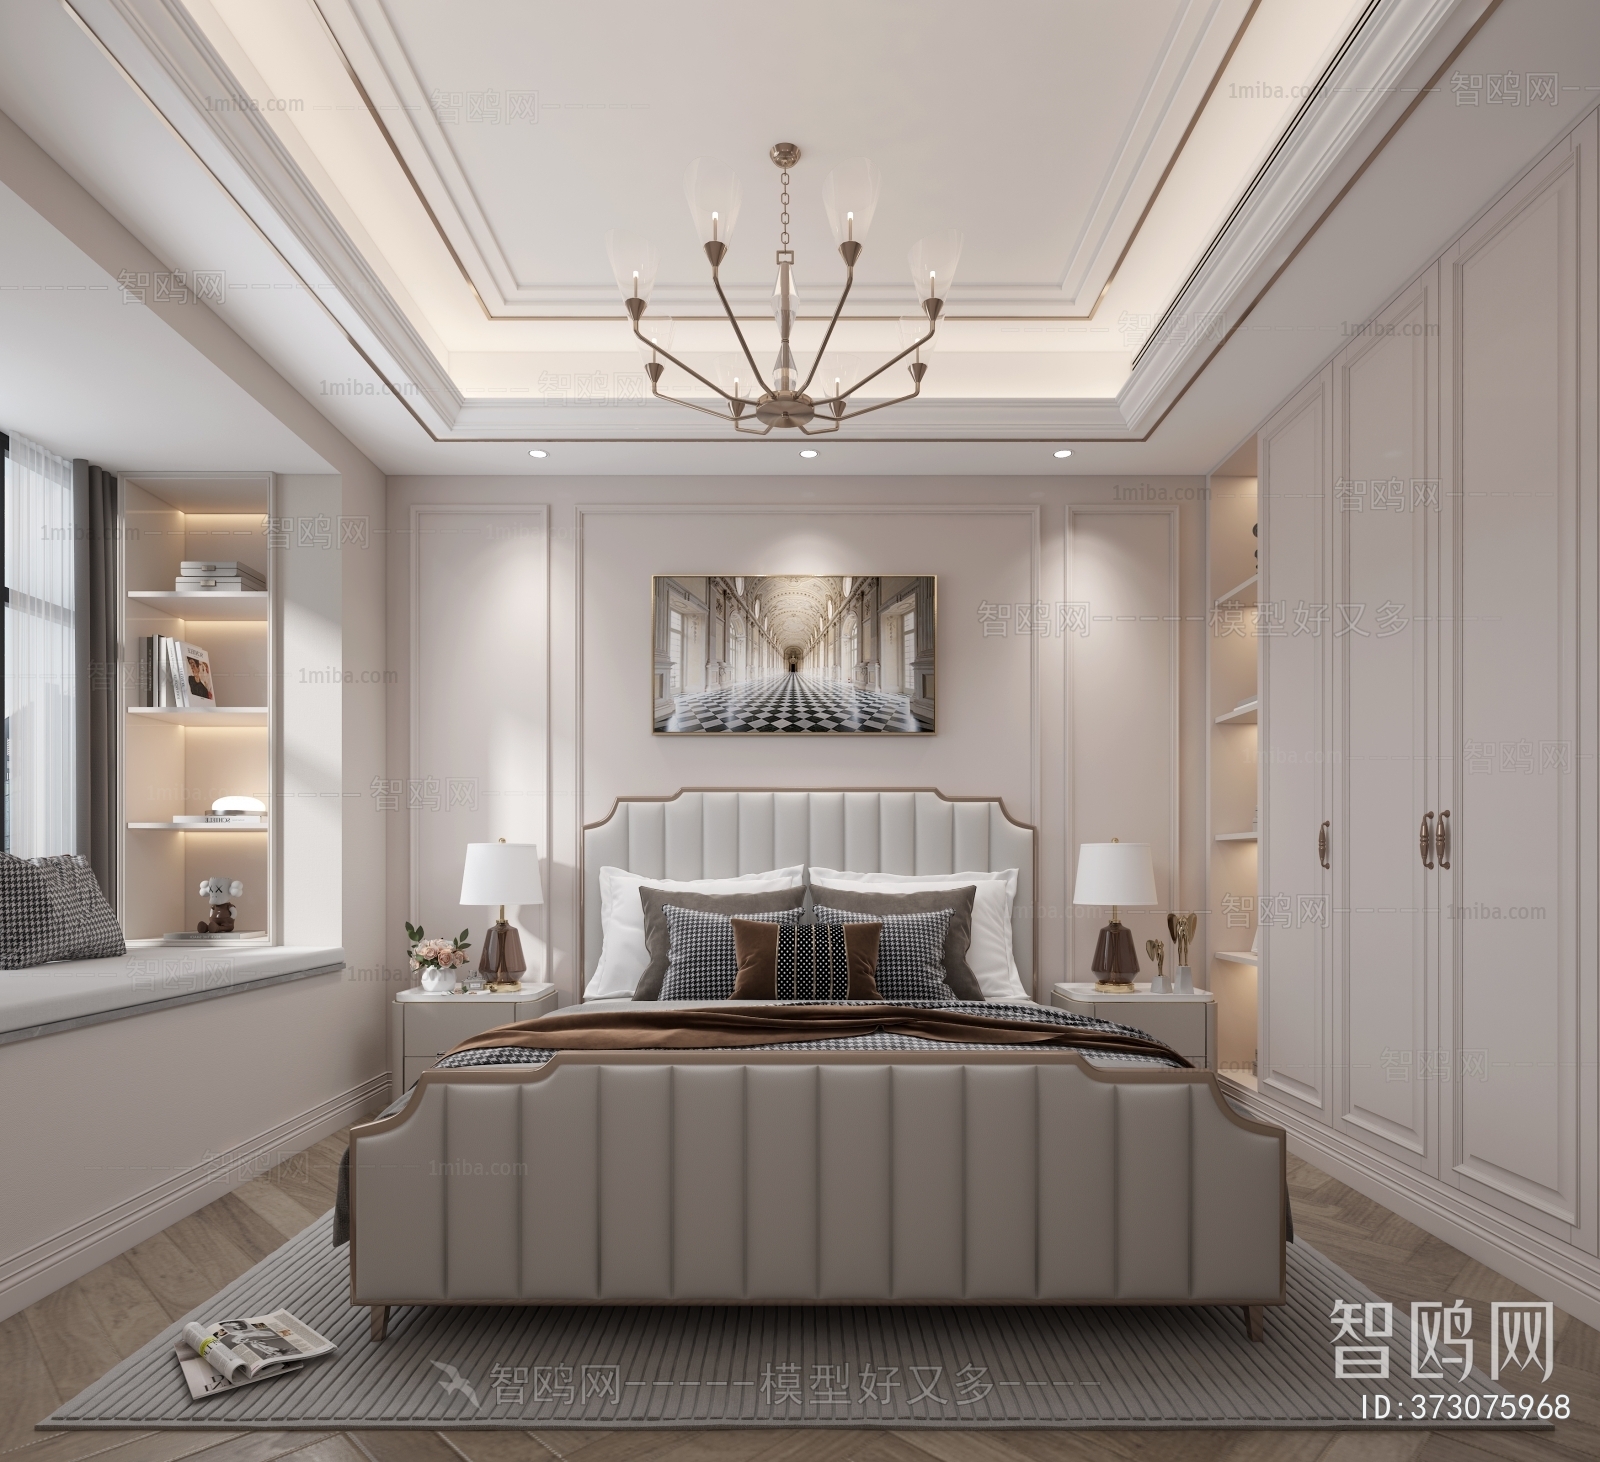 Modern Simple European Style Bedroom